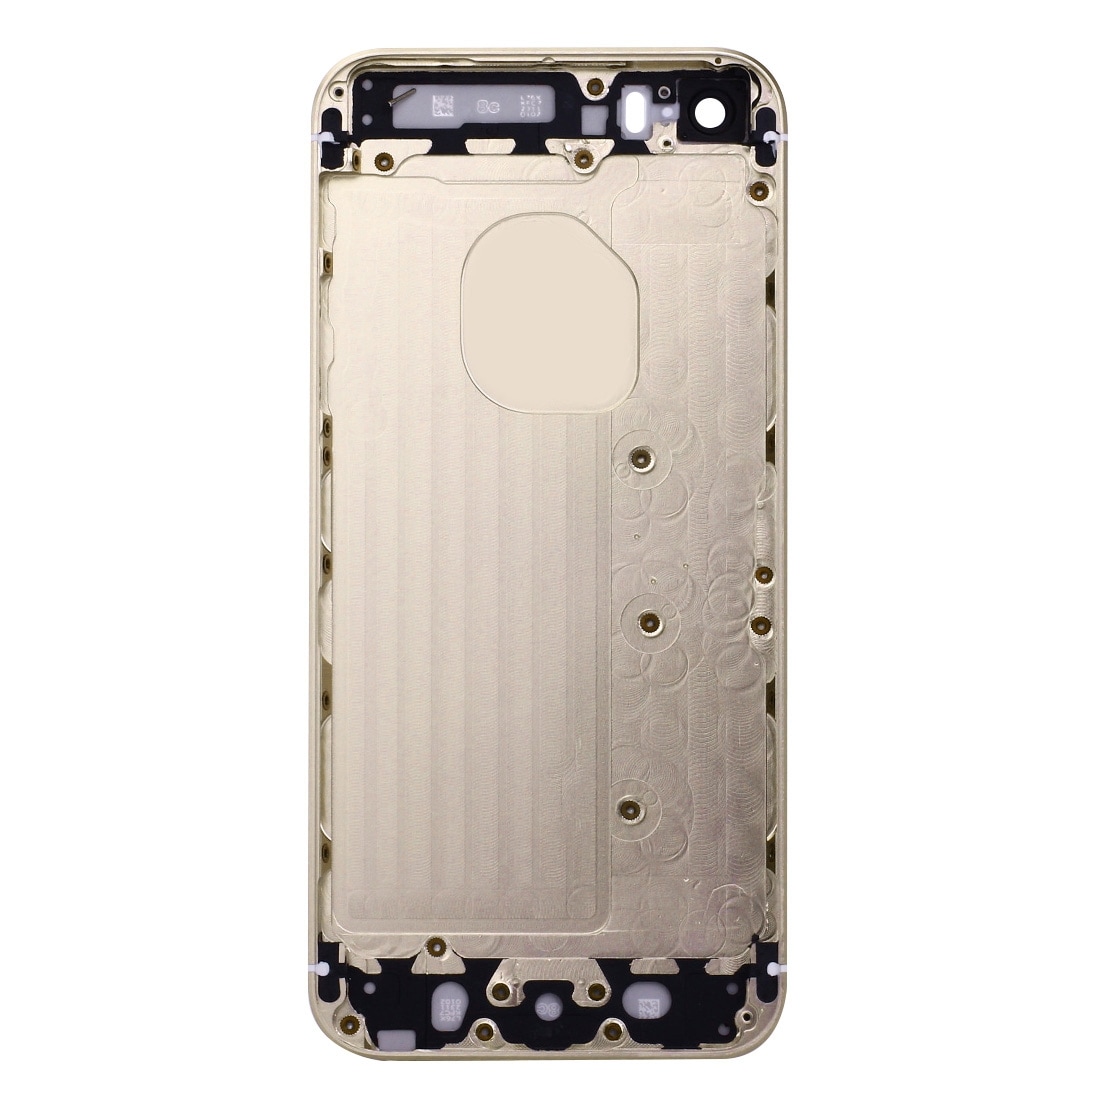 Komplett skalbyte iPhone SE - Guld